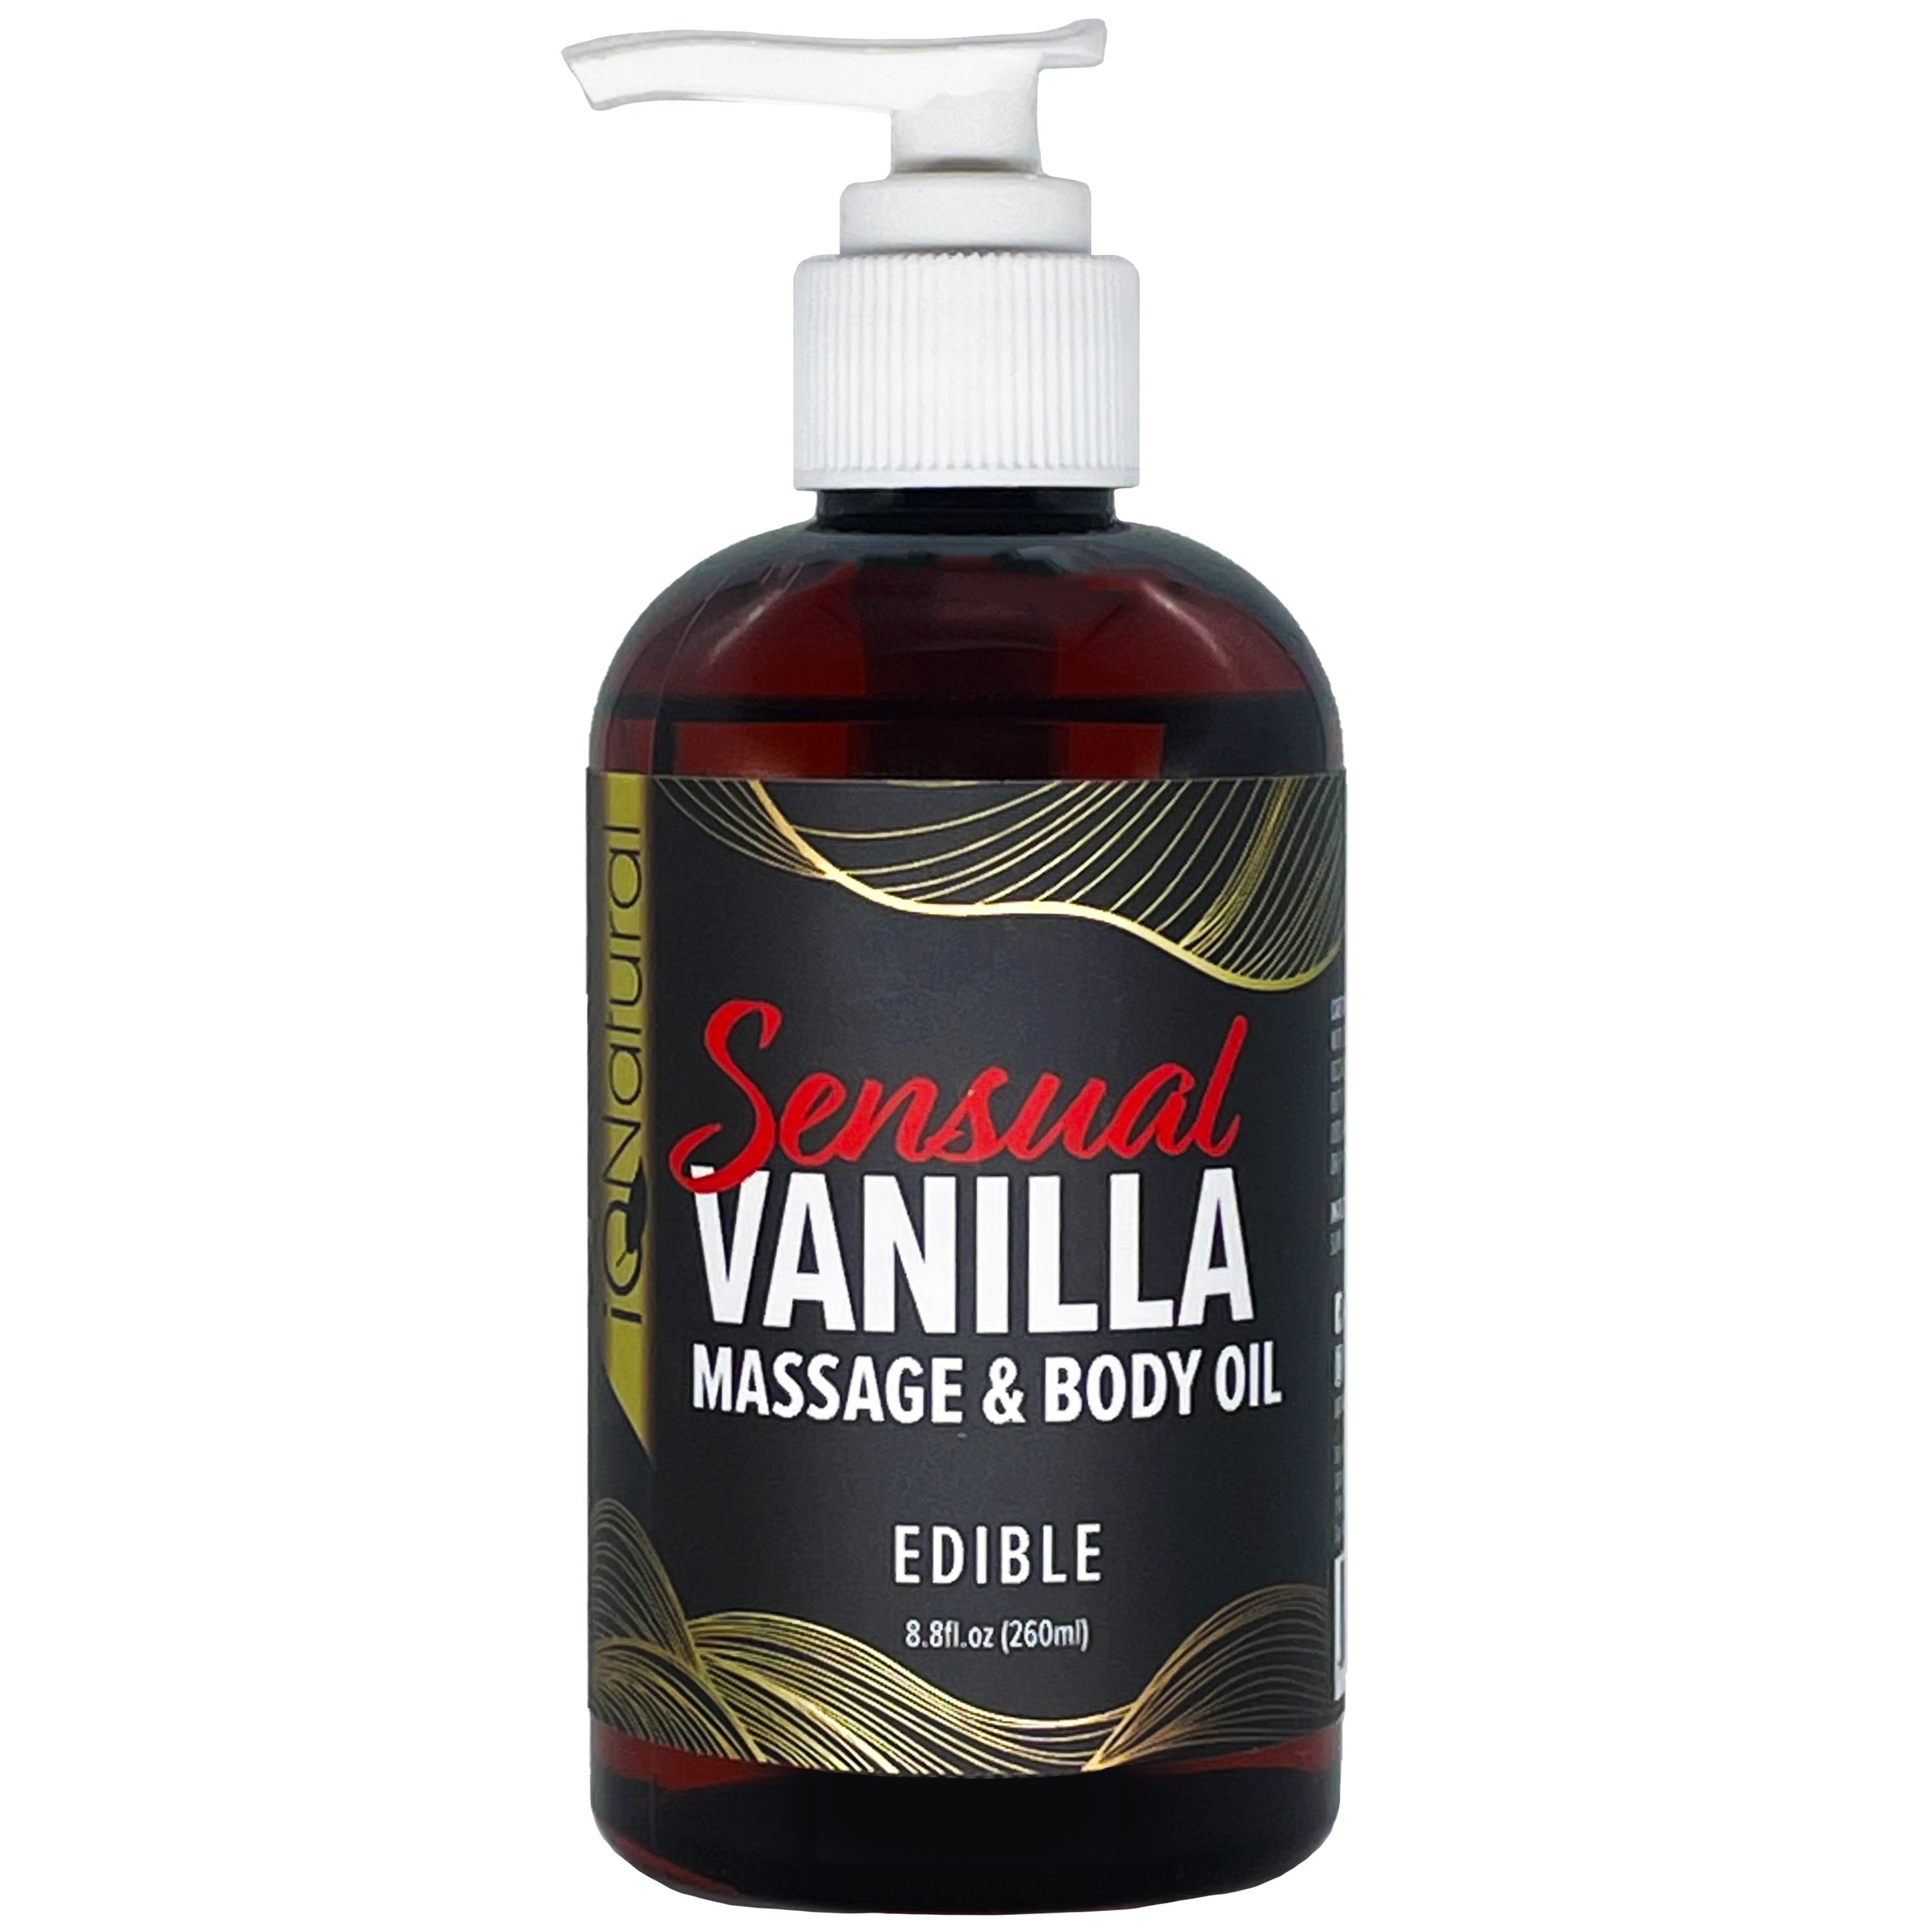 iQ Natural Massage Oil and Body Oil Sensual Vanilla Edible for Intimate Massage Therapy 8.8 fl oz photo photo